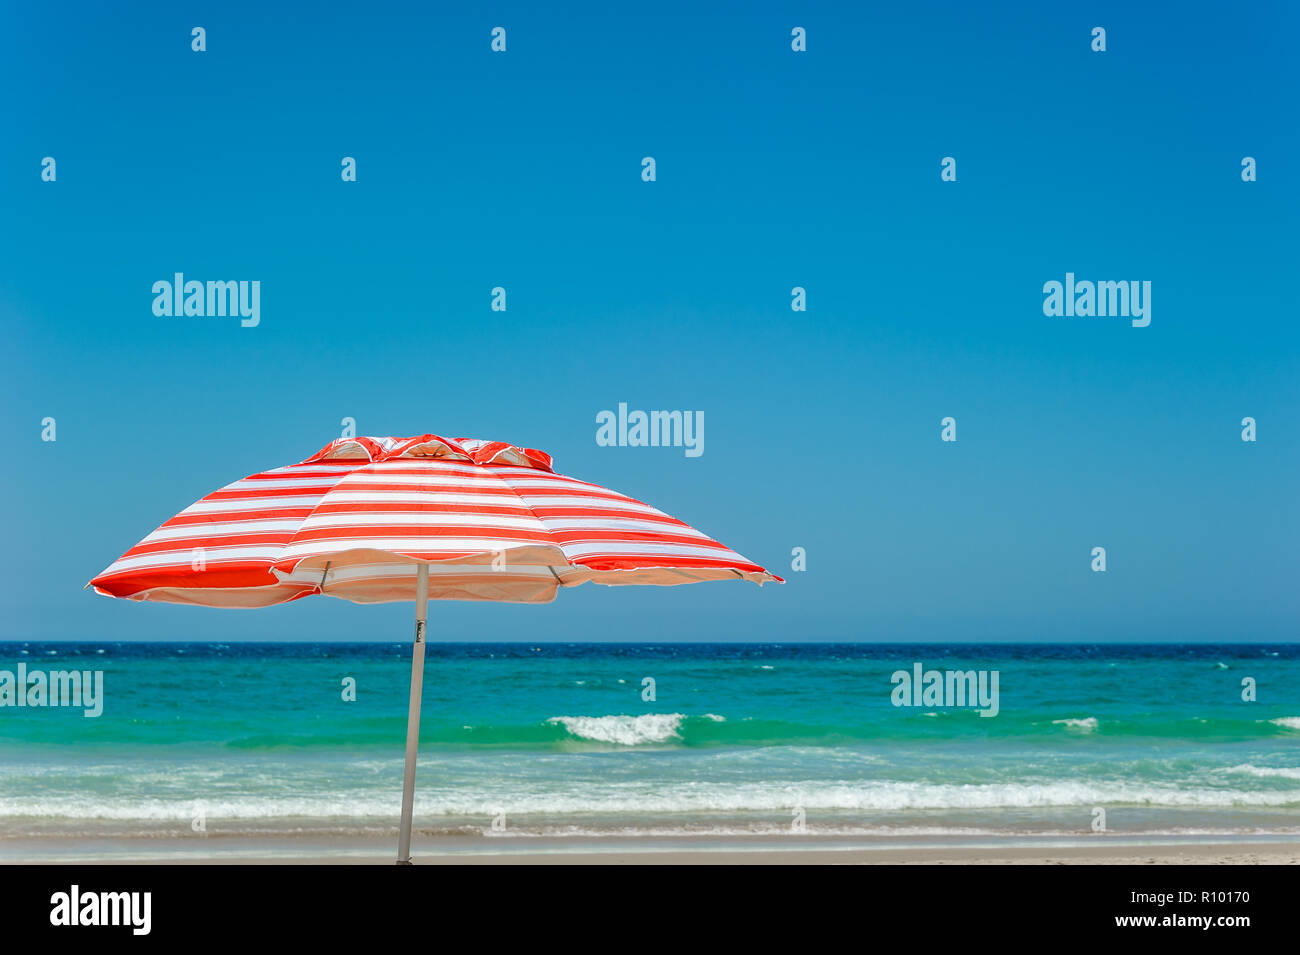 La mia a strisce rosse e bianche ombrellone da spiaggia si erge come un simbolo iconico di una spiaggia lo stile di vita e cultura sul Surfer's Paradise Beach a Gold Coast. Foto Stock